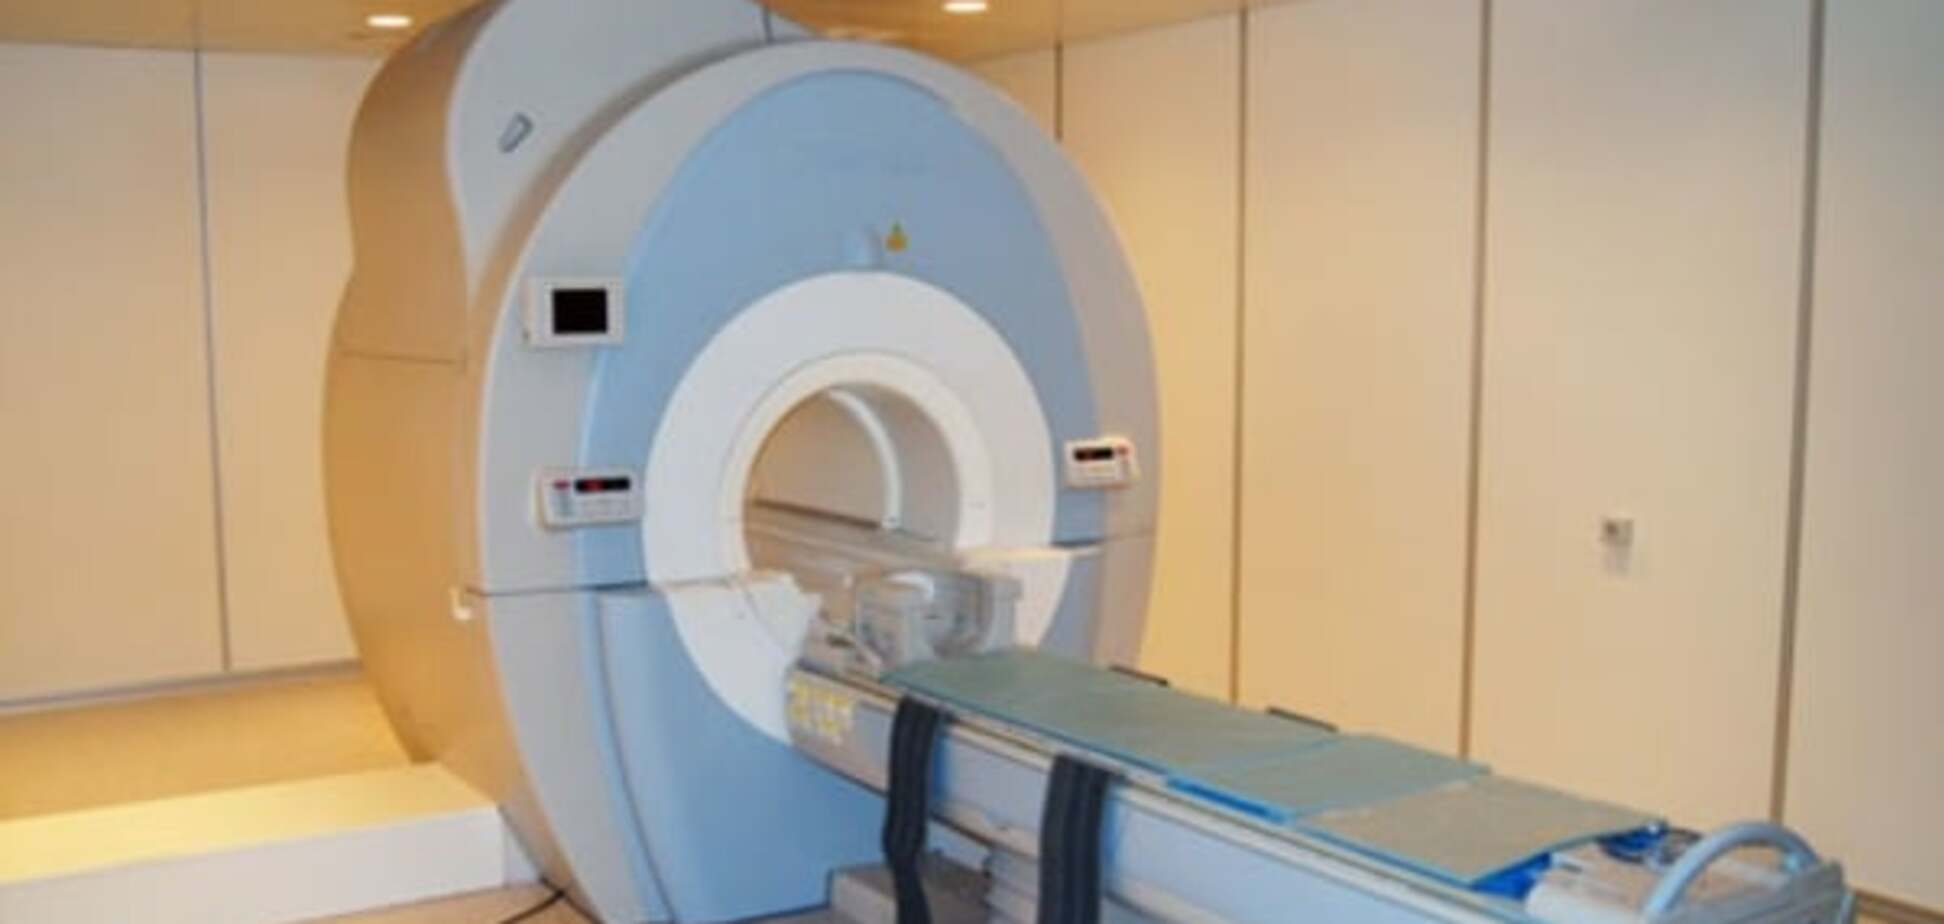 Один из киевских томографов представляет опасность для пациентов